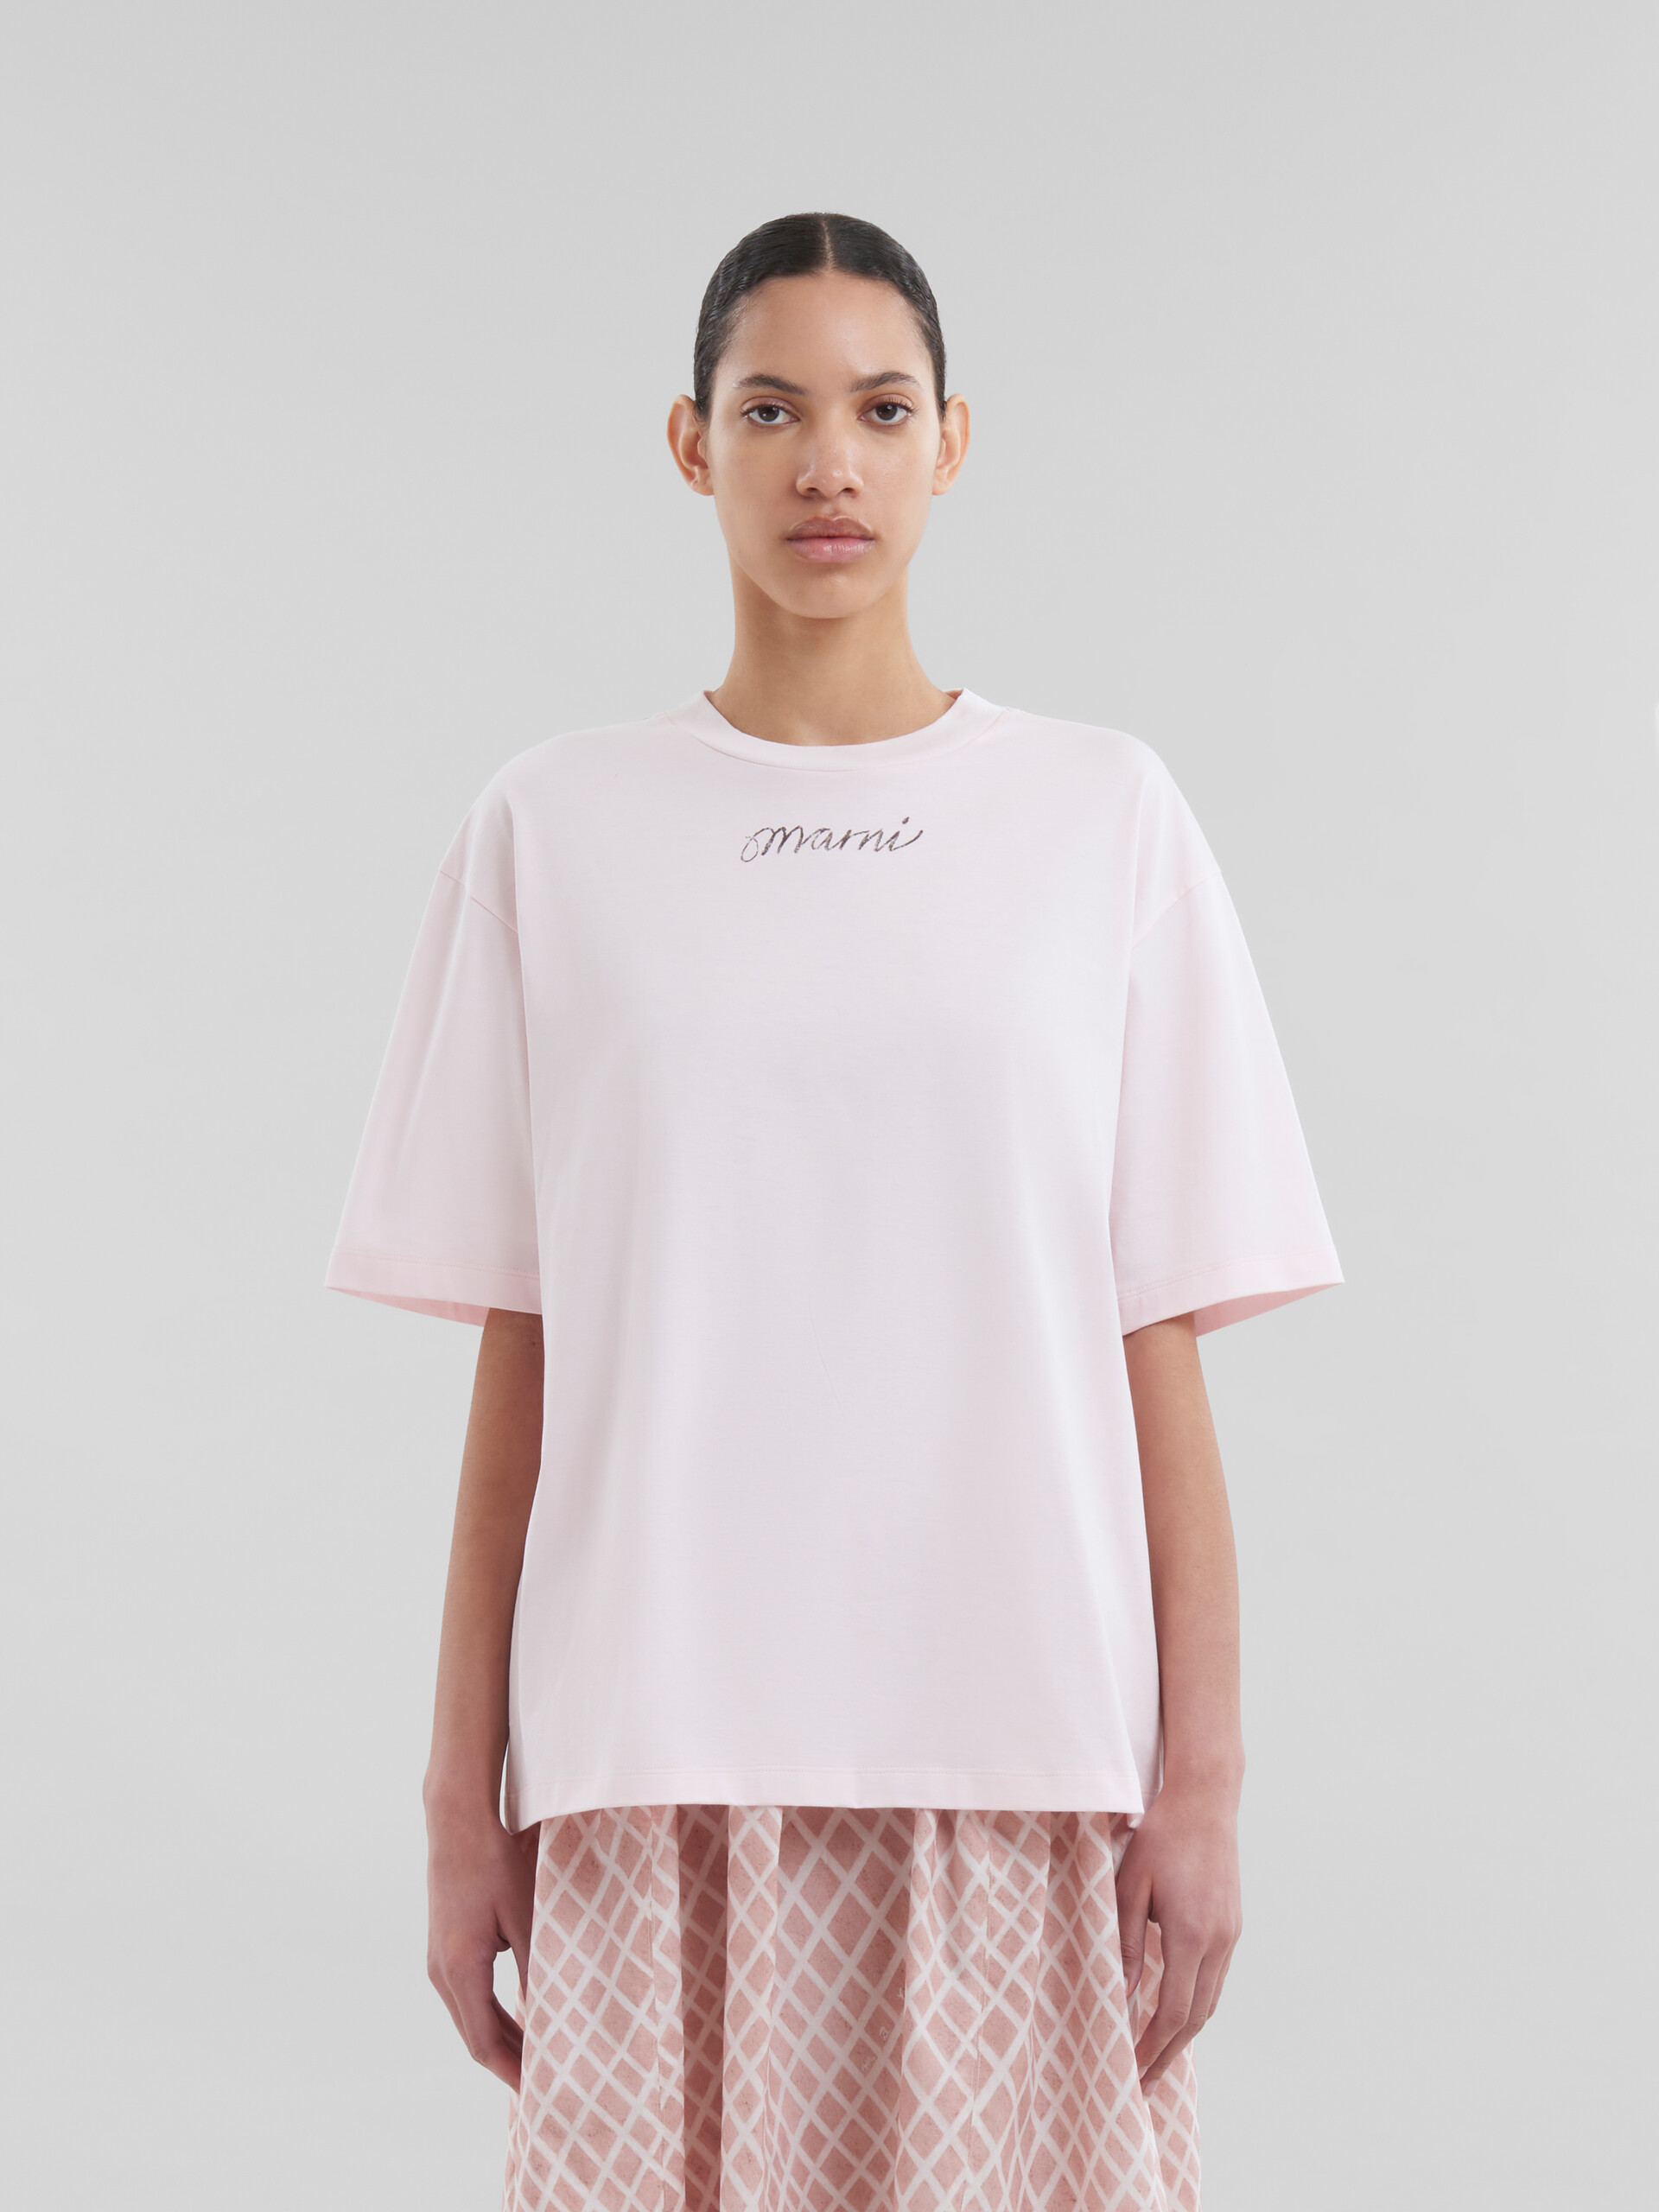 Rosafarbenes, kastenförmiges T-Shirt aus Bio-Baumwolle mit wiederholtem Logo - T-shirts - Image 2